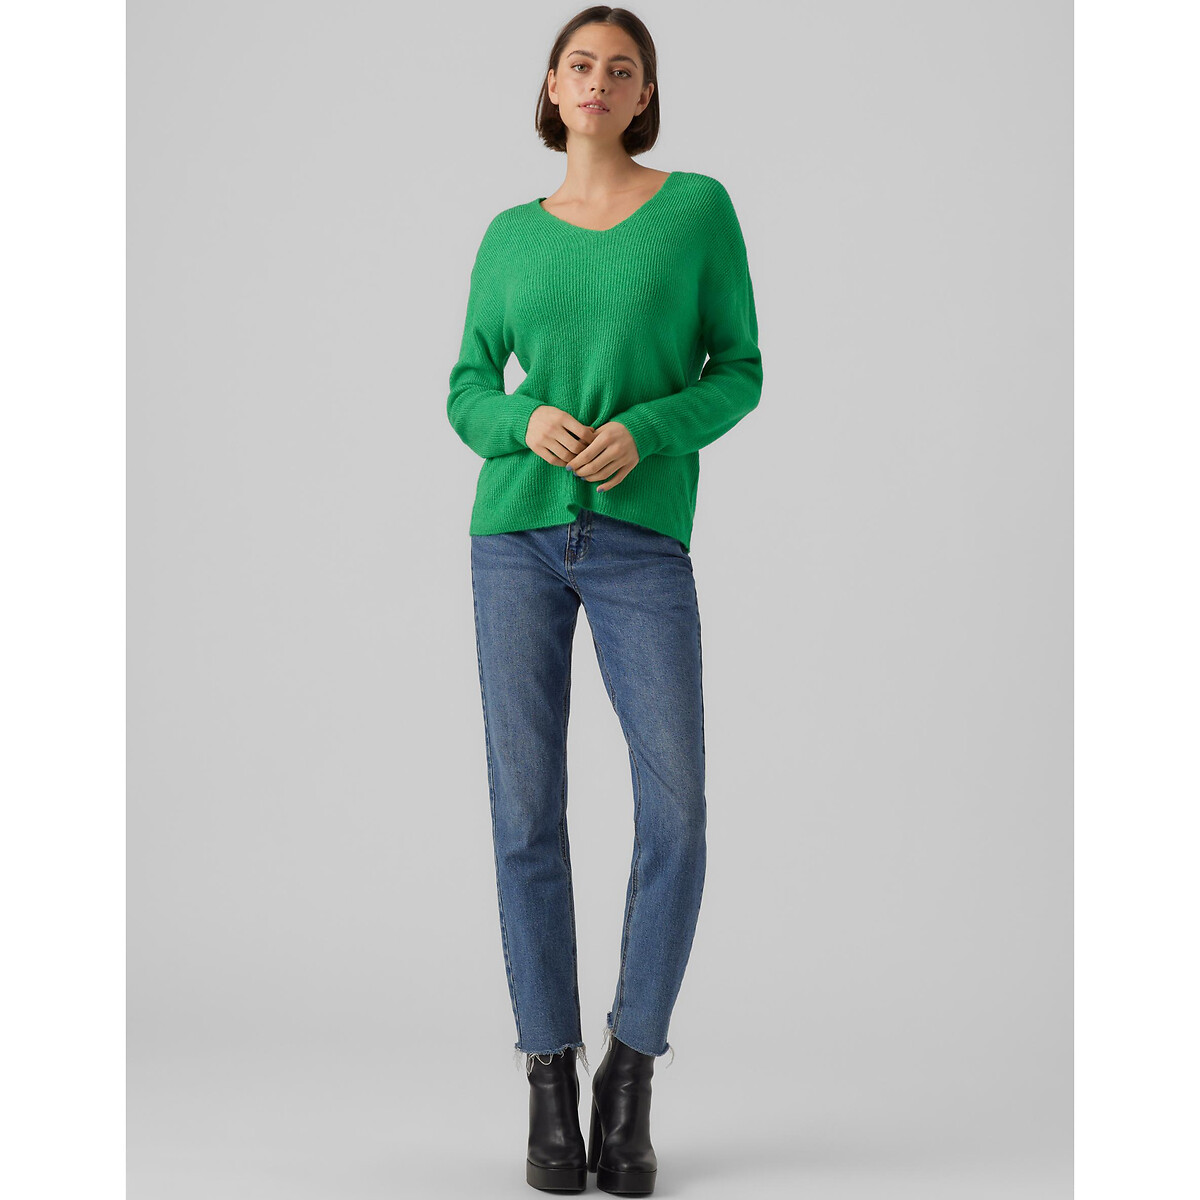 Пуловер Из пышного трикотажа V-образный вырез L зеленый LaRedoute, размер L - фото 3